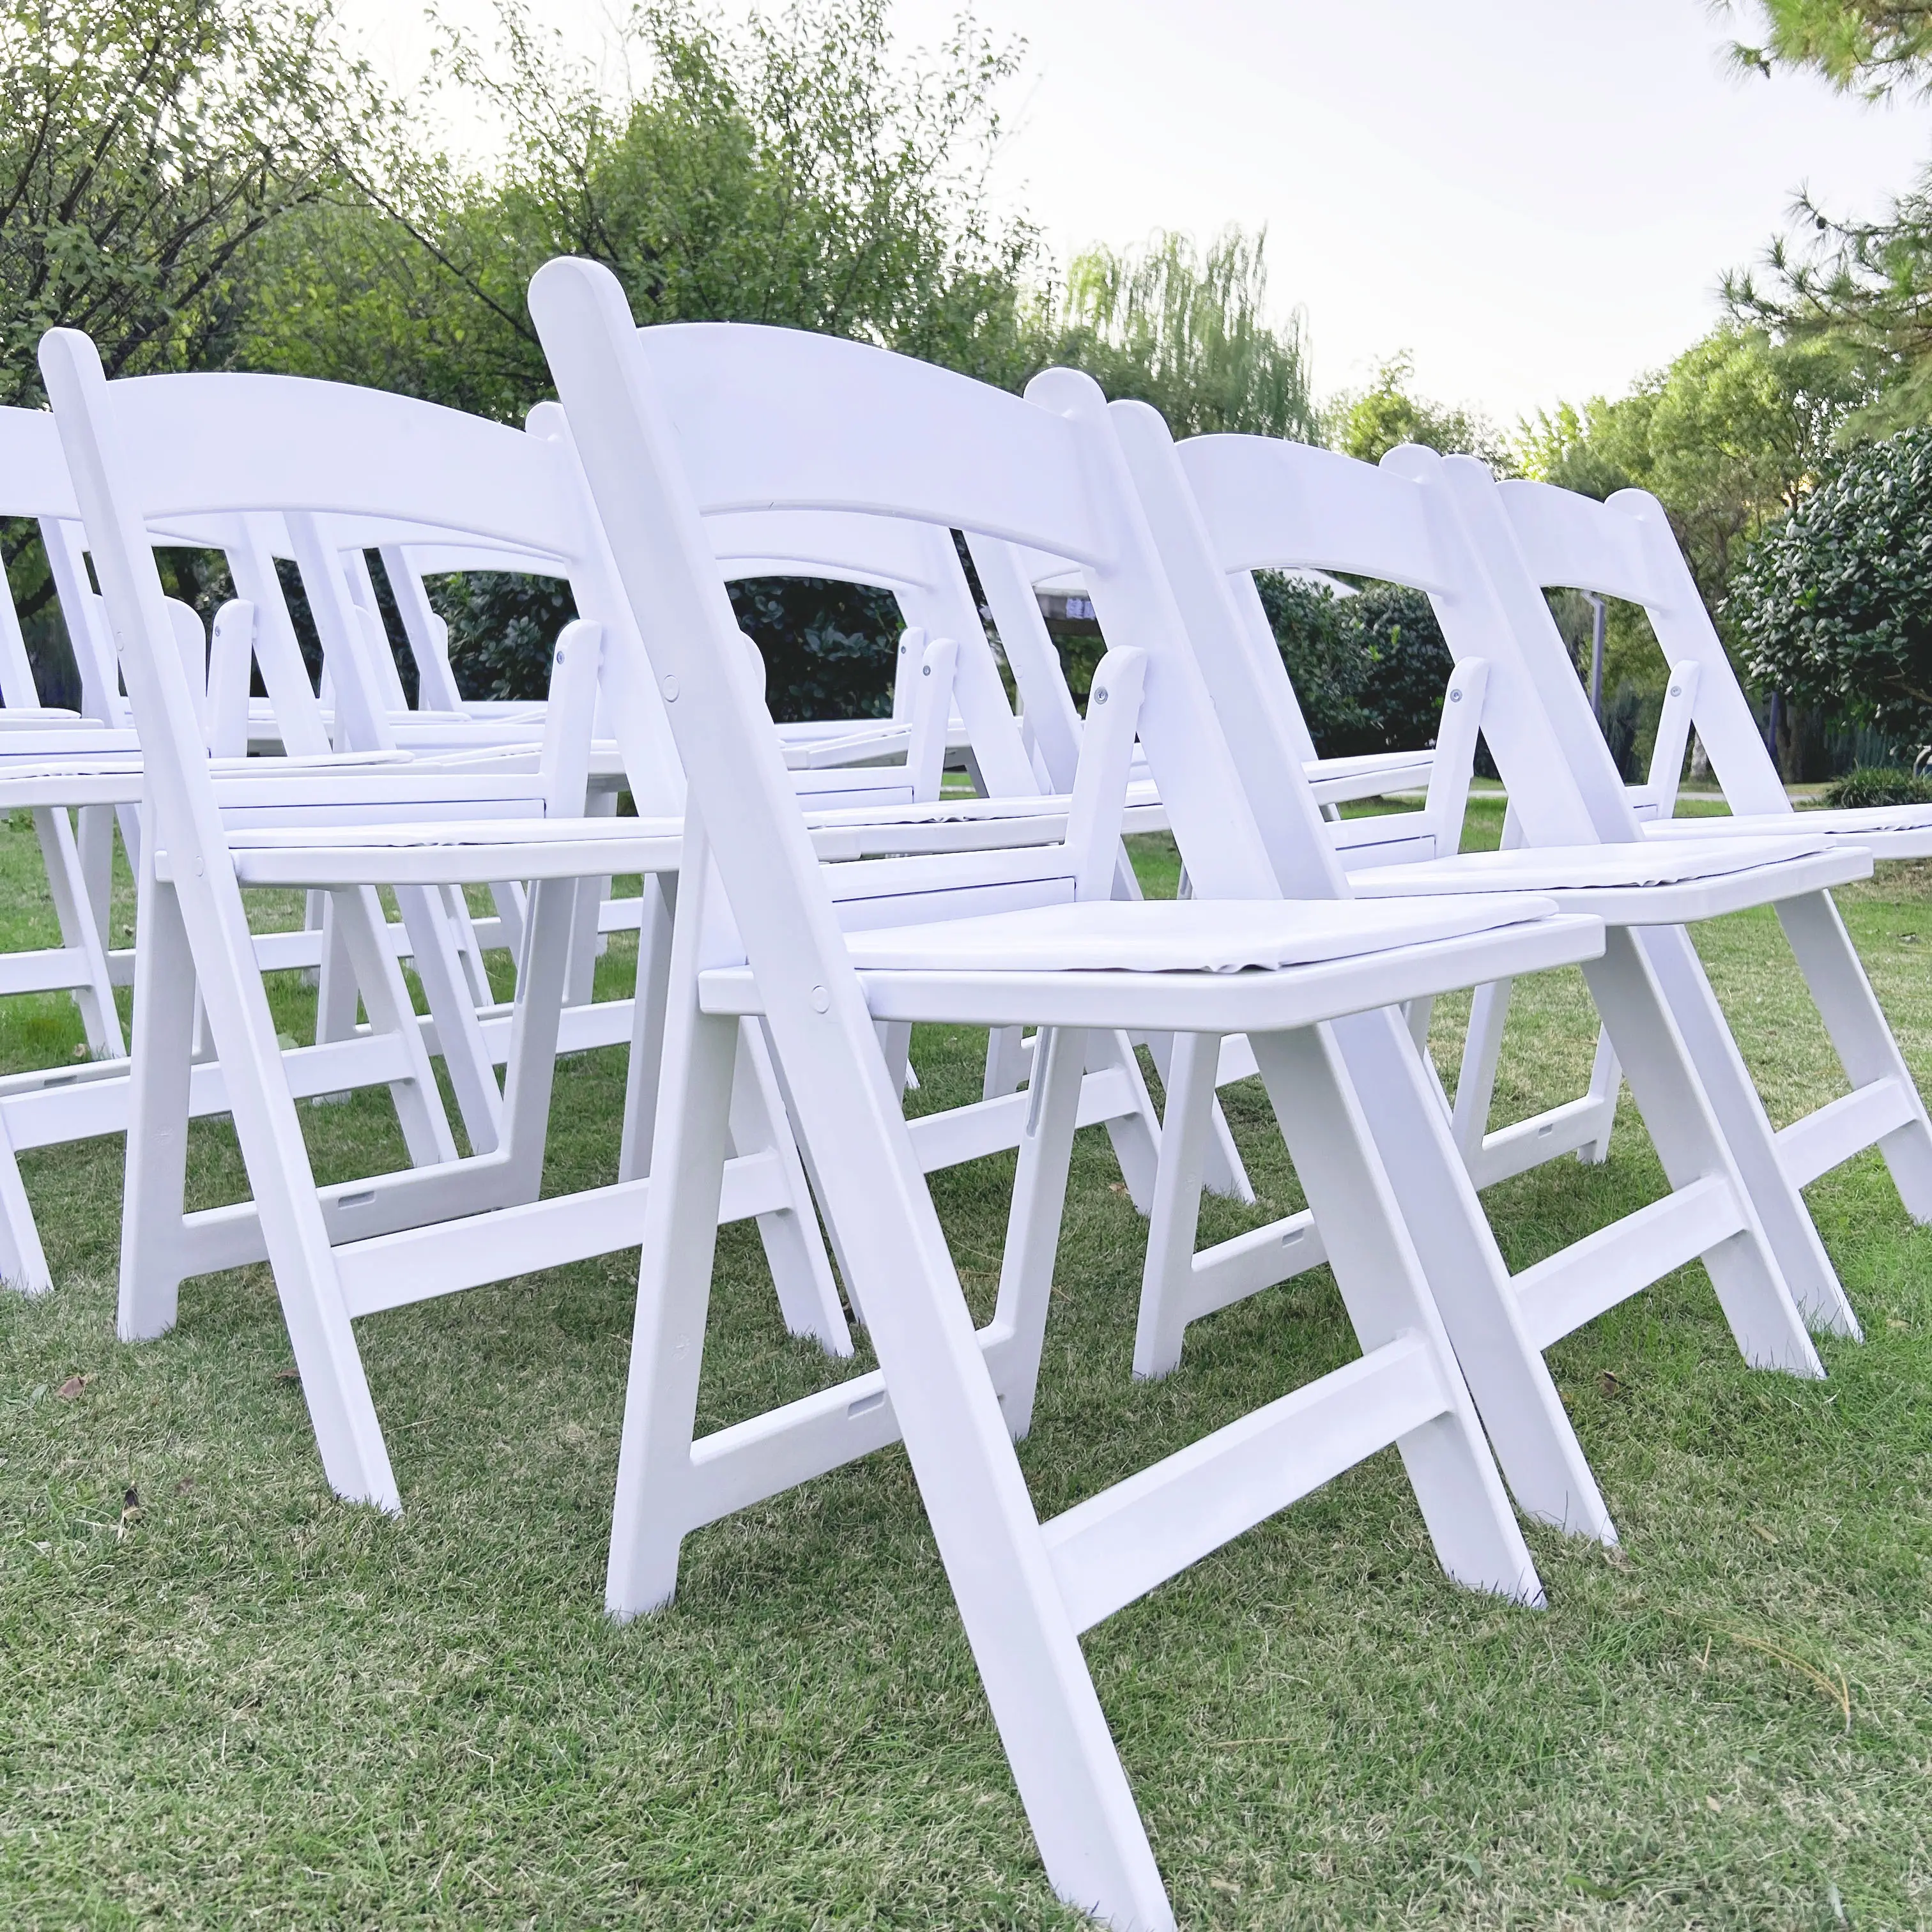 Venta al por mayor de sillas plegables de plástico de resina blanca para banquetes de boda, hotel, jardín, restaurante, sillas plegables para eventos